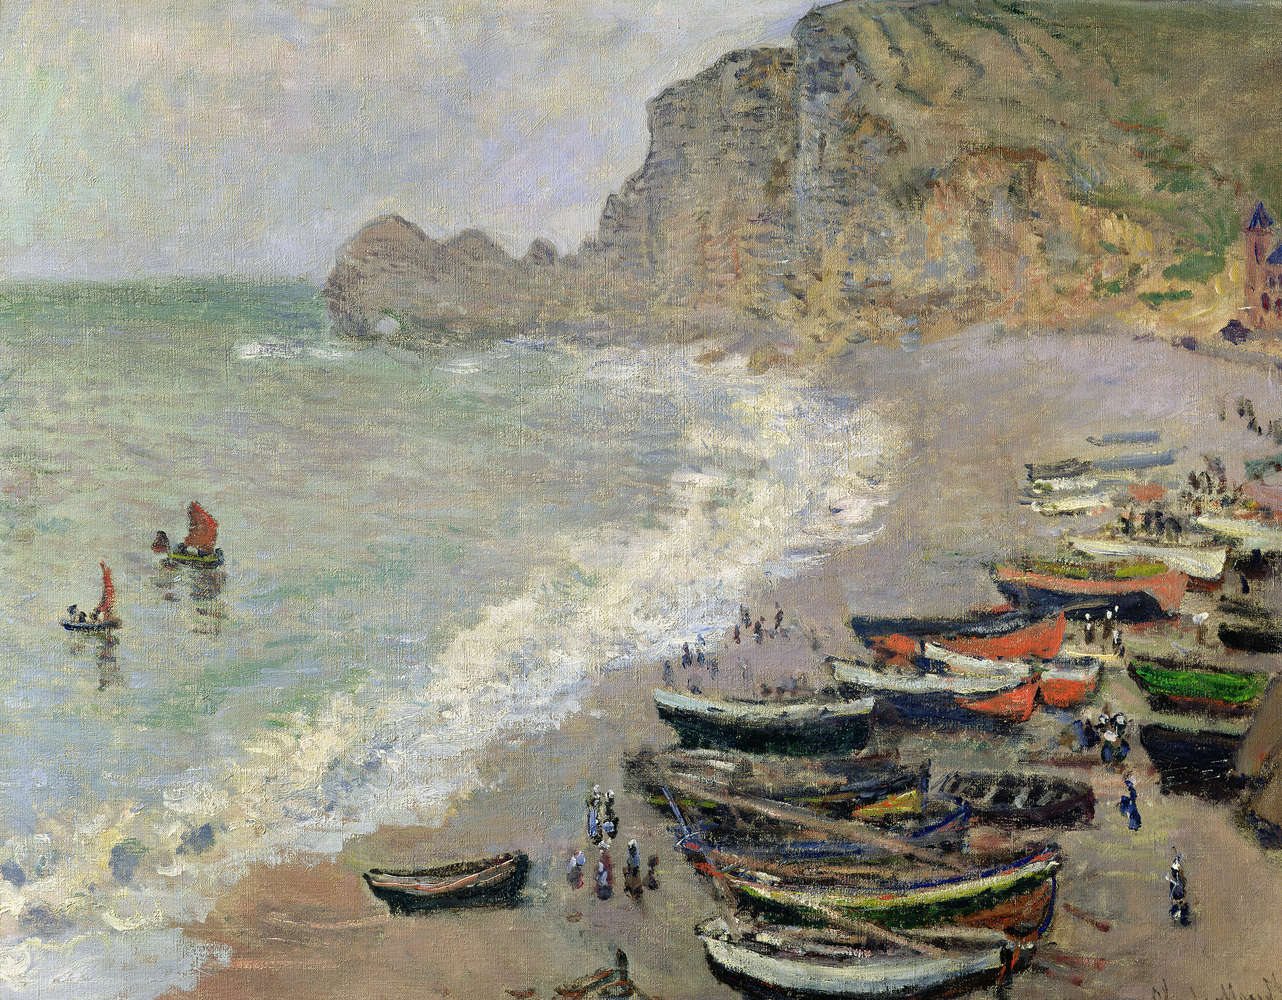             Fototapete "Etretat, Strand und die Porte d'Amont" von Claude Monet
        